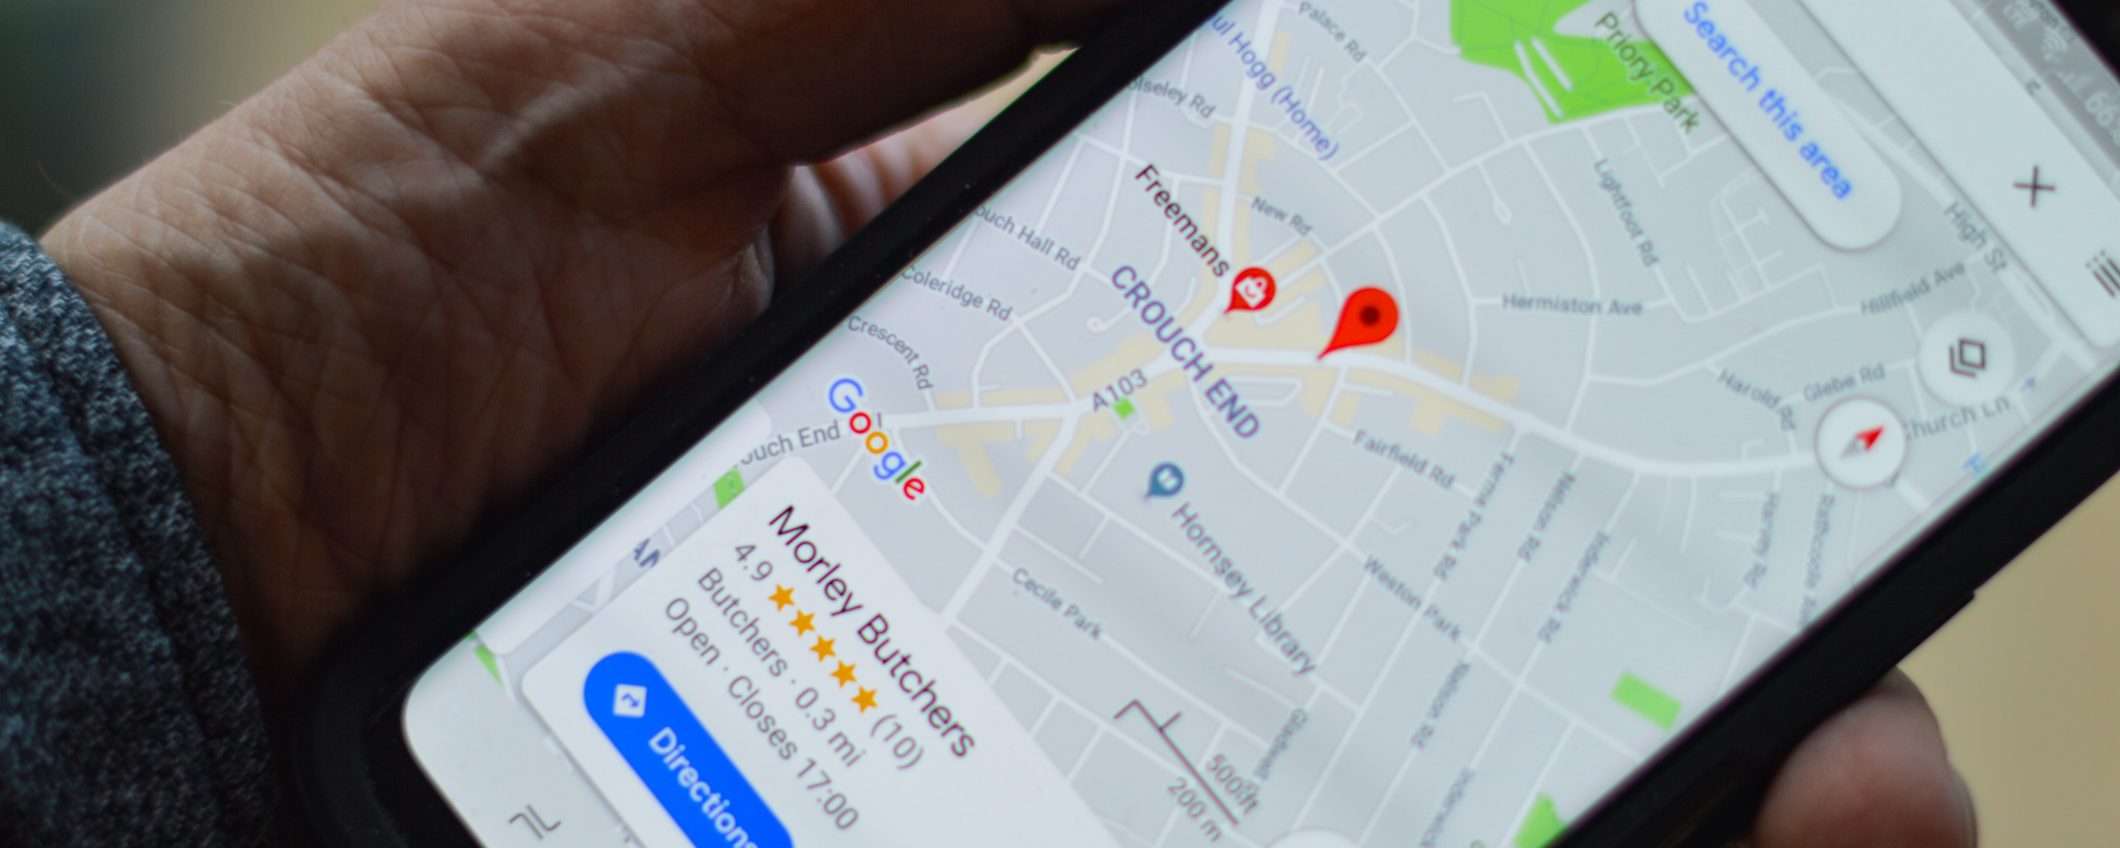 Google Maps evidenzia ristorazione a domicilio e farmacie